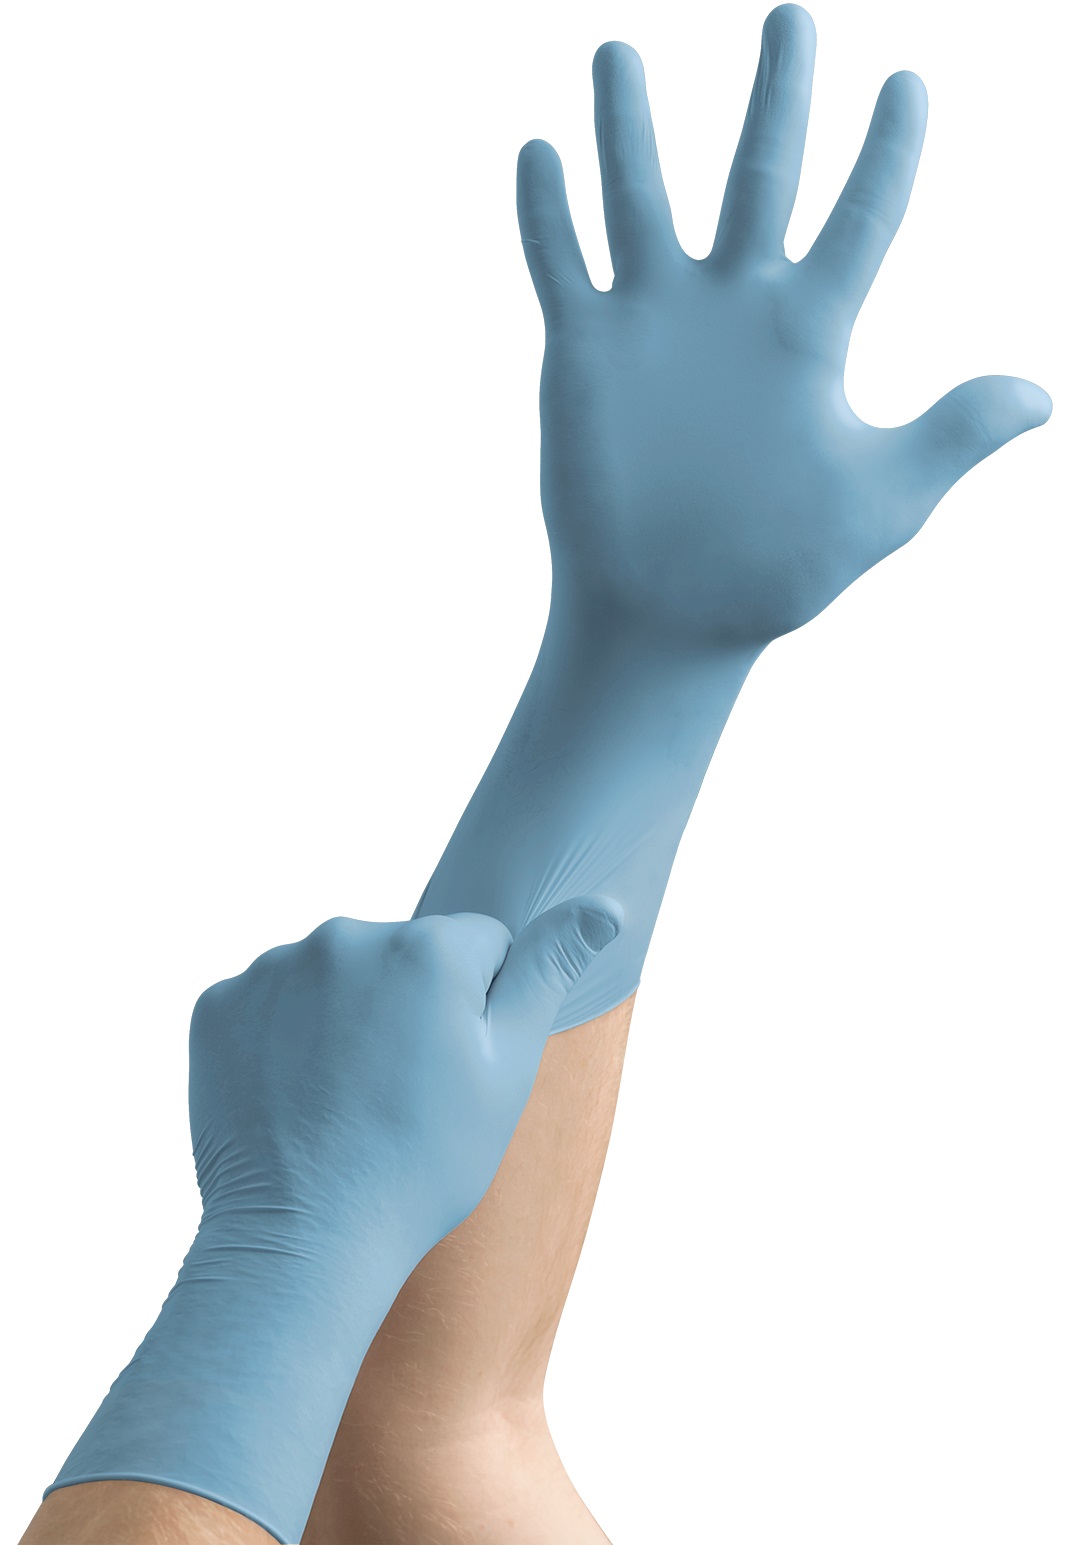 100 Handschuhe pro Spender Größe 6.5-7 Chemikalien- und Flüssigkeitsschutz Hellblau Ansell TouchNTuff 92-665 Nitril Handschuhe